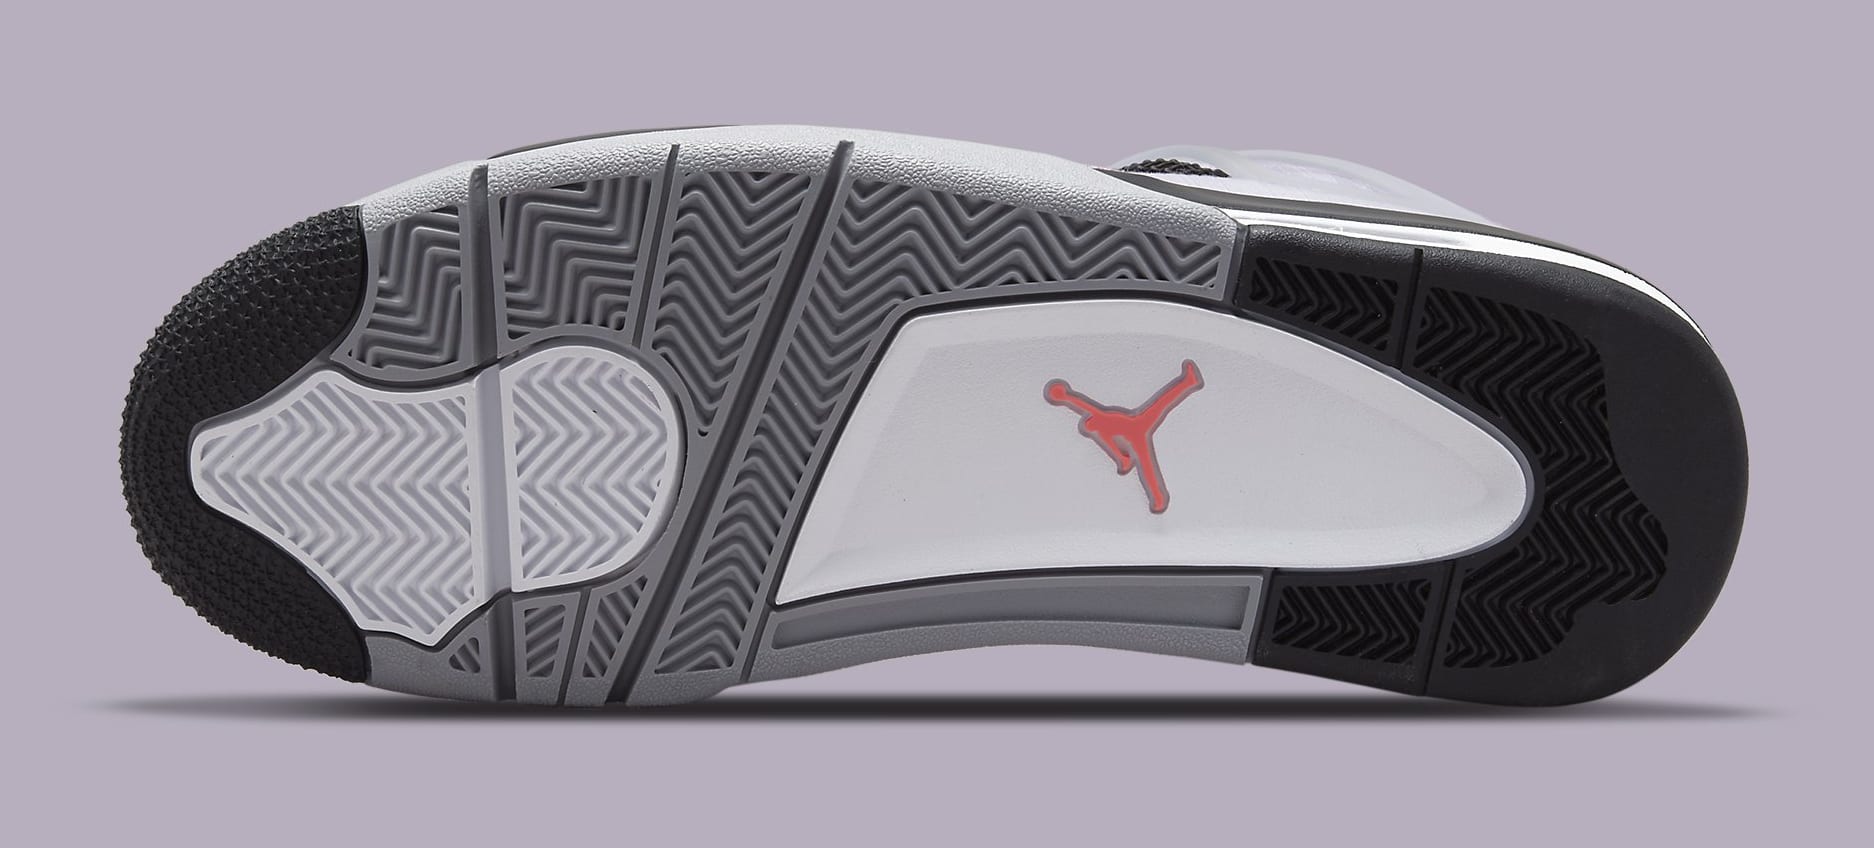 Air Jordan 4 Retro &#x27;Amethyst Wave&#x27; DH7138 506 Outsole